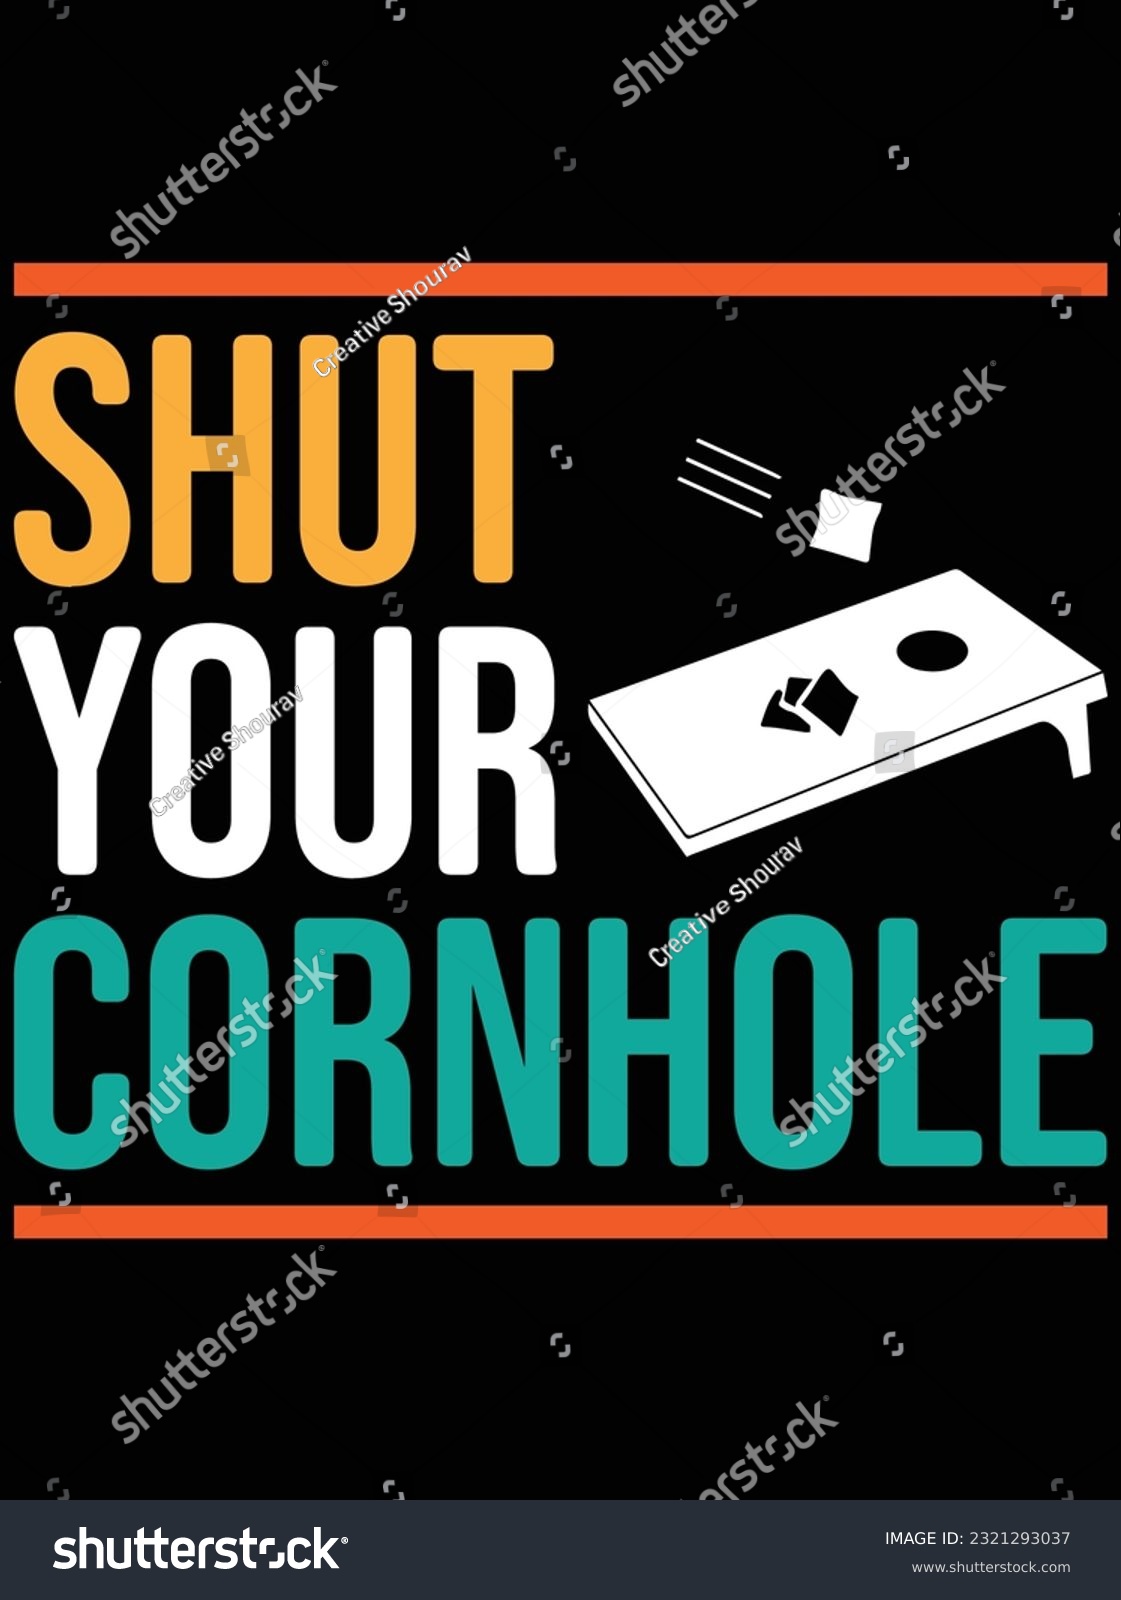 SVG of Shut your cornhole vector art design, eps file. design file for t-shirt. SVG, EPS cuttable design file svg